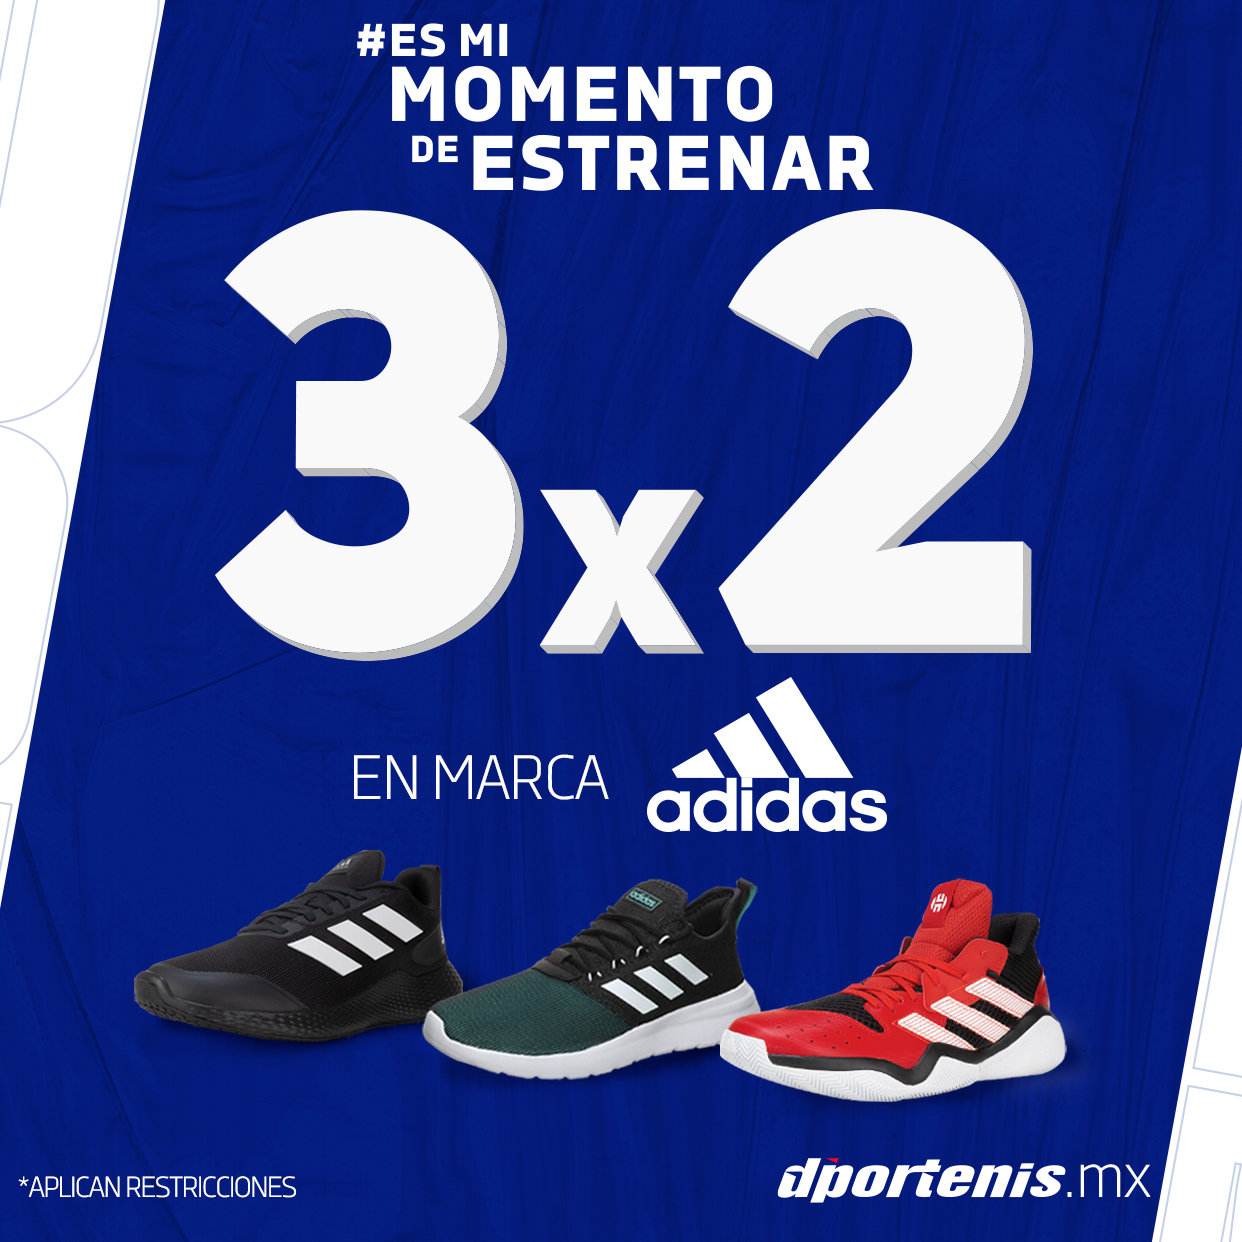 Cazaofertas on Twitter: "3x2 en Adidas en este fin de semana https://t.co/2OQ5kQDgqr #Oferta #promocion #México #ofertas #promociones #descuentos #Cazaofertas https://t.co/ZF0n3CmLHs" / Twitter